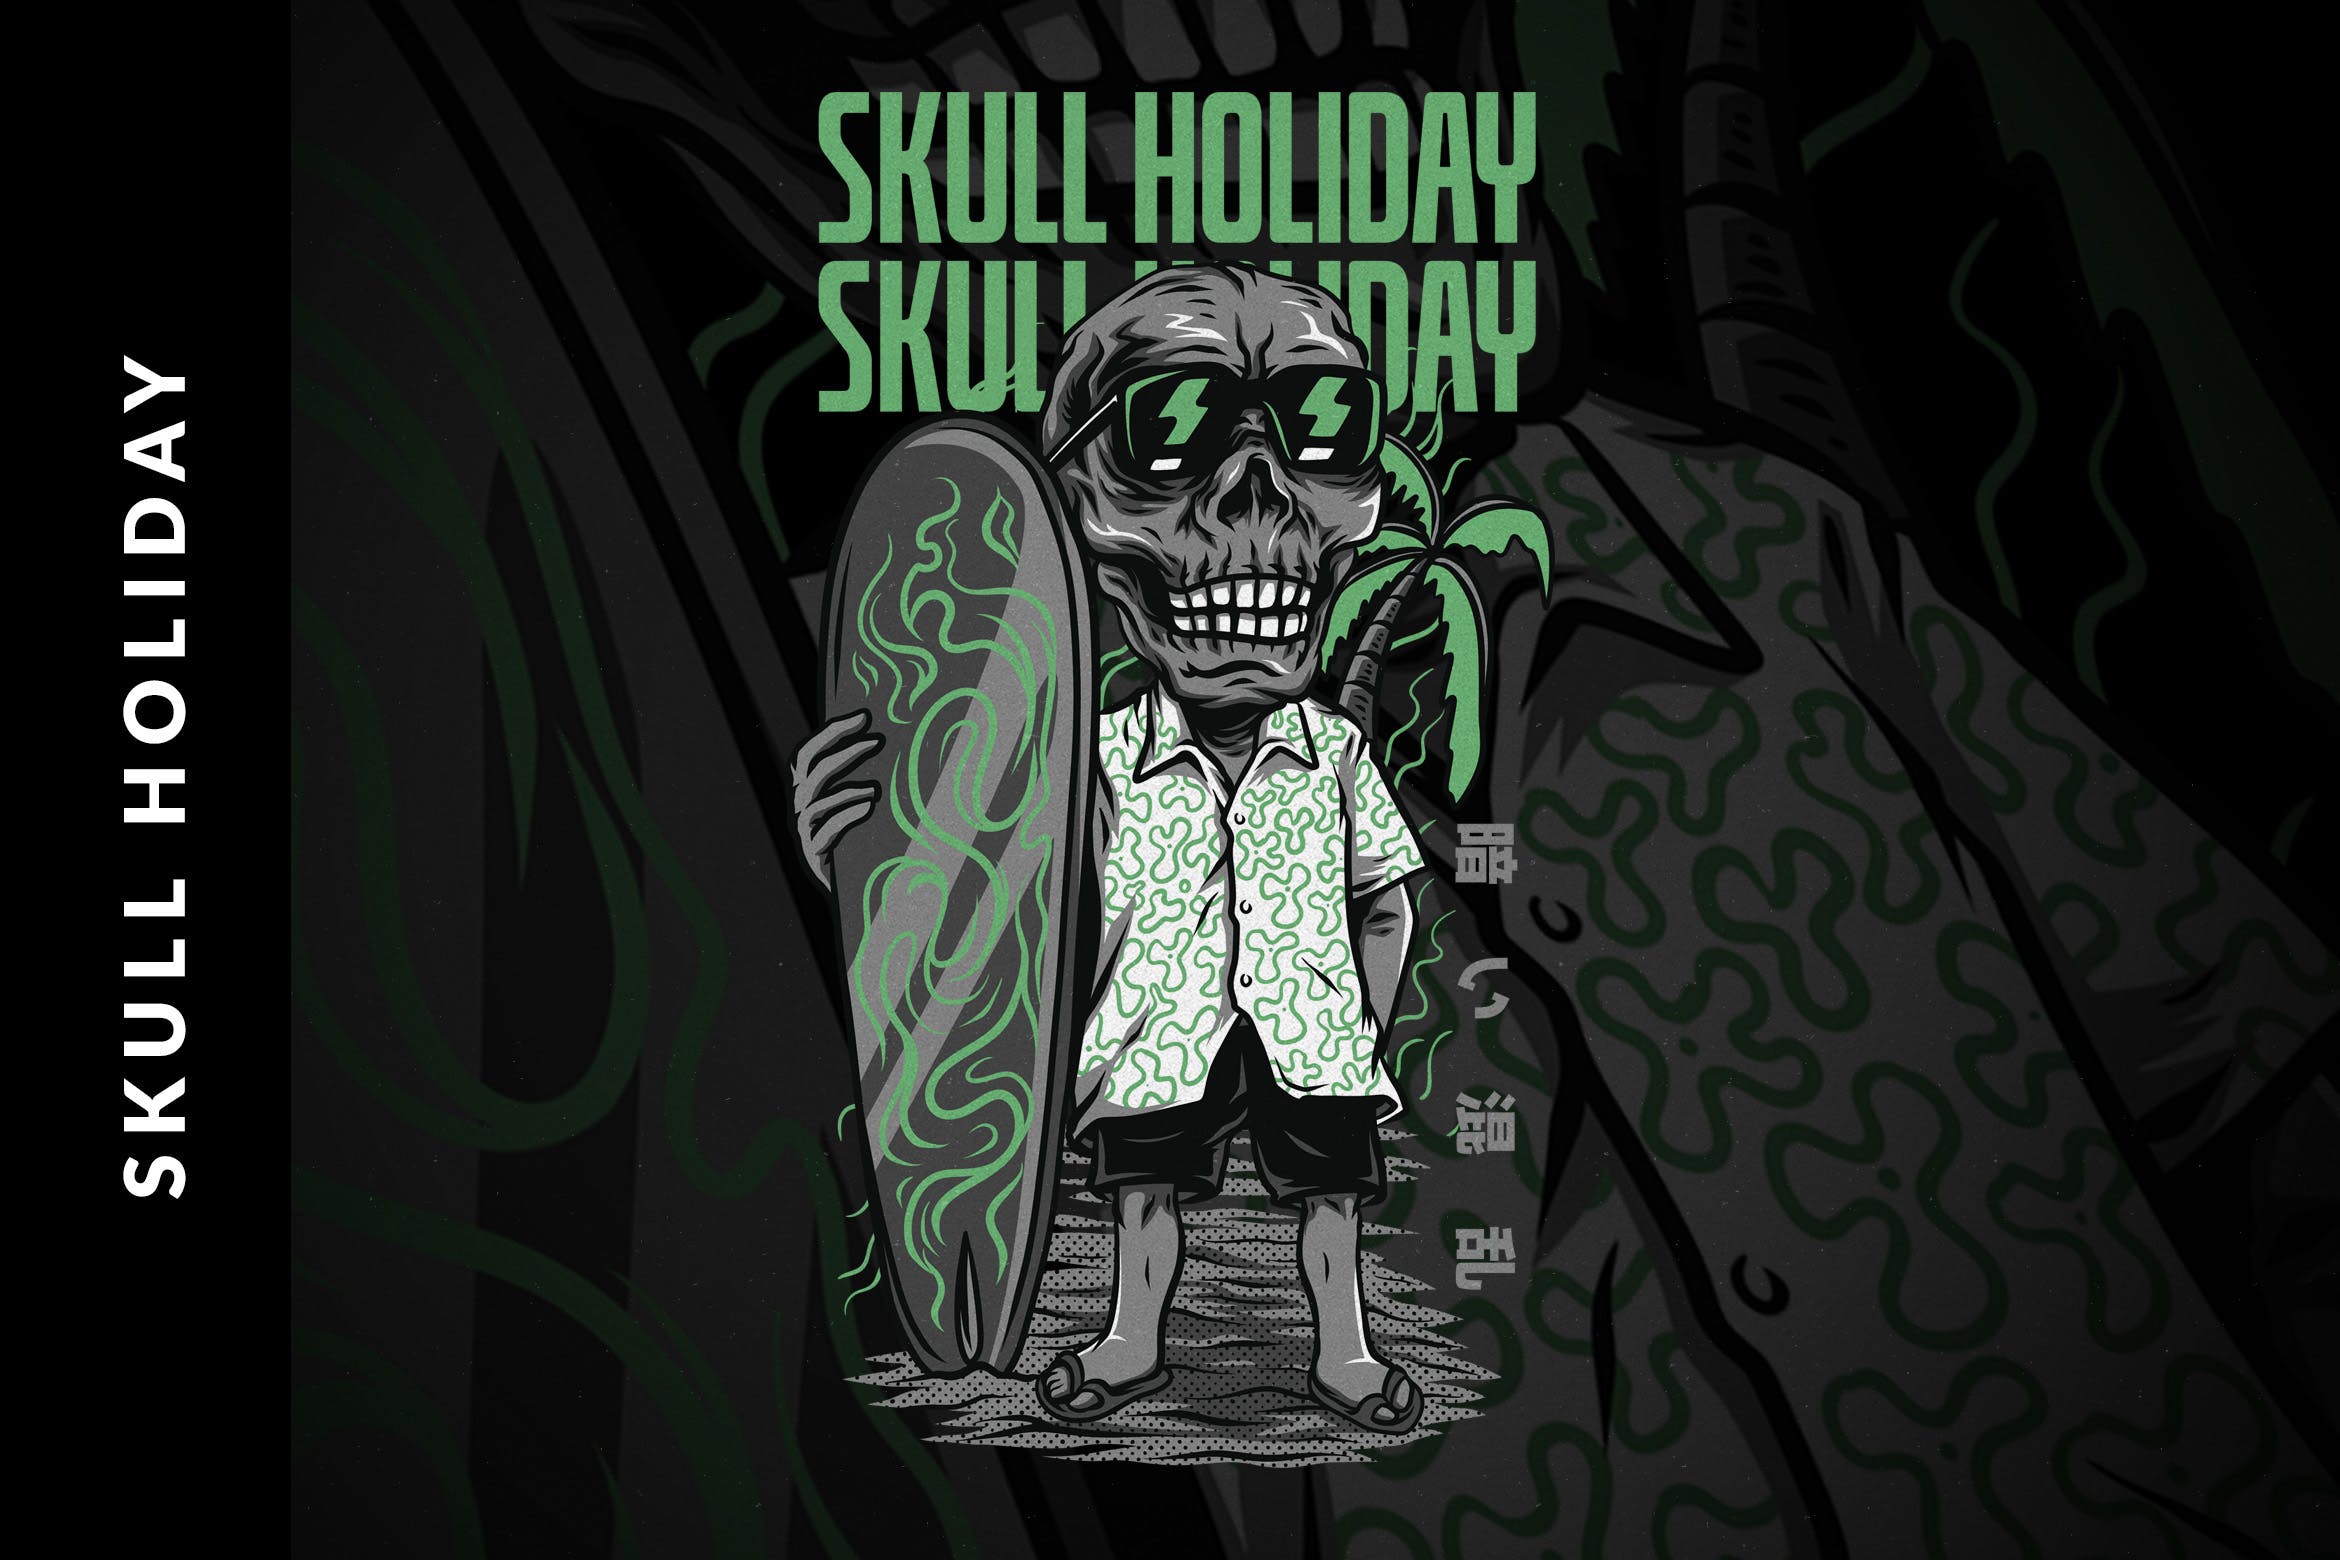 骷髅假日主题T恤印花设计矢量模板 Skull Holiday T-Shirt Design插图